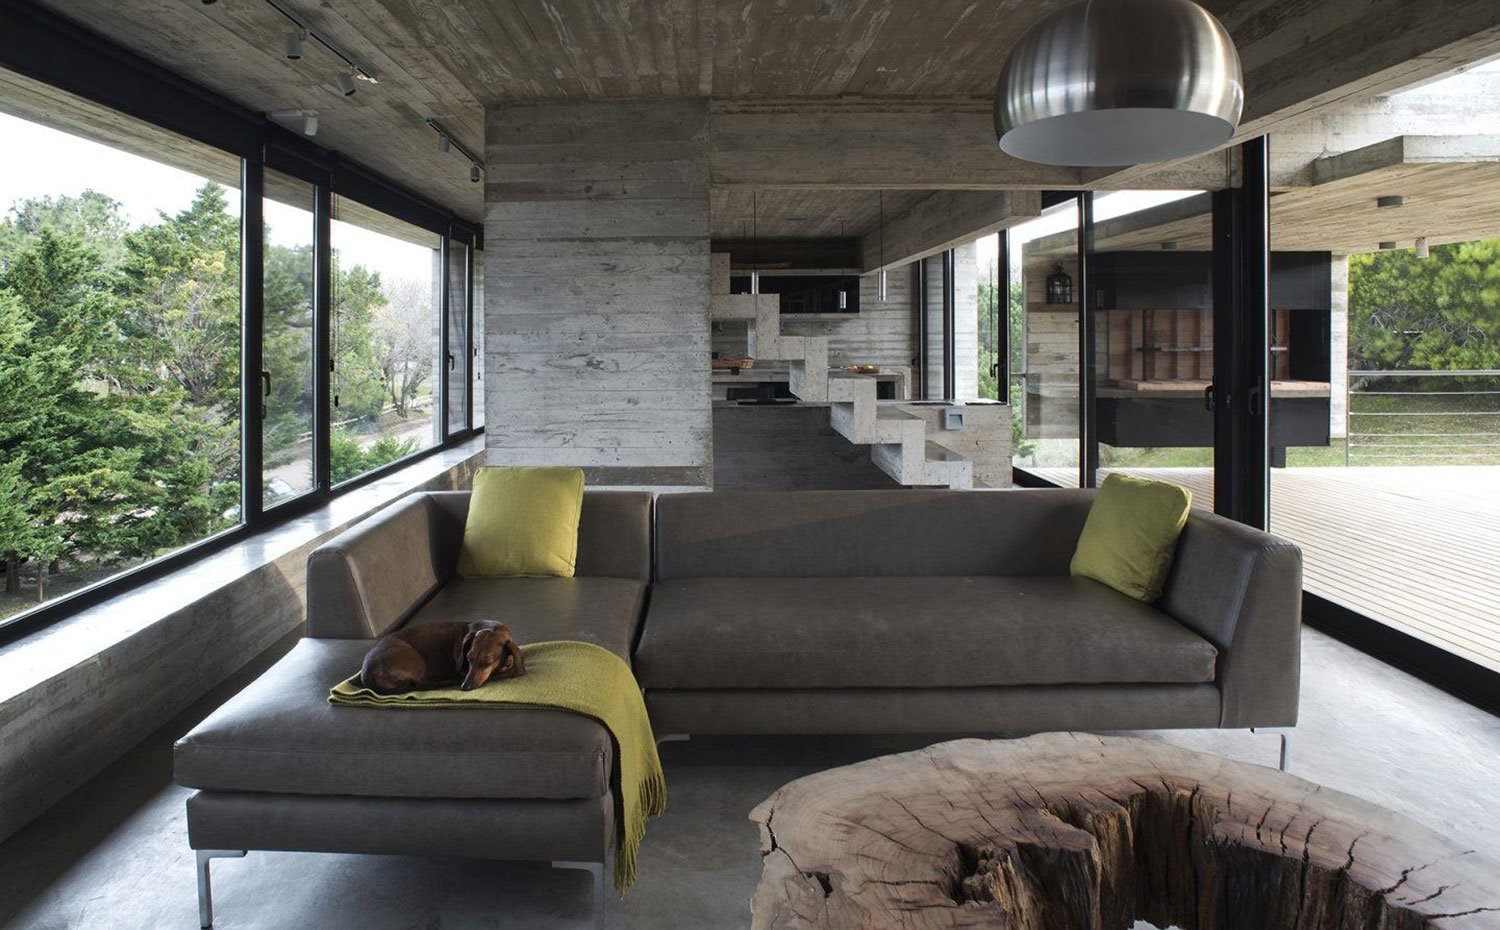 Zona de estar con sofá gris, cojines y manta pistacho, estructura de hormigón con cocina abierta al fondo